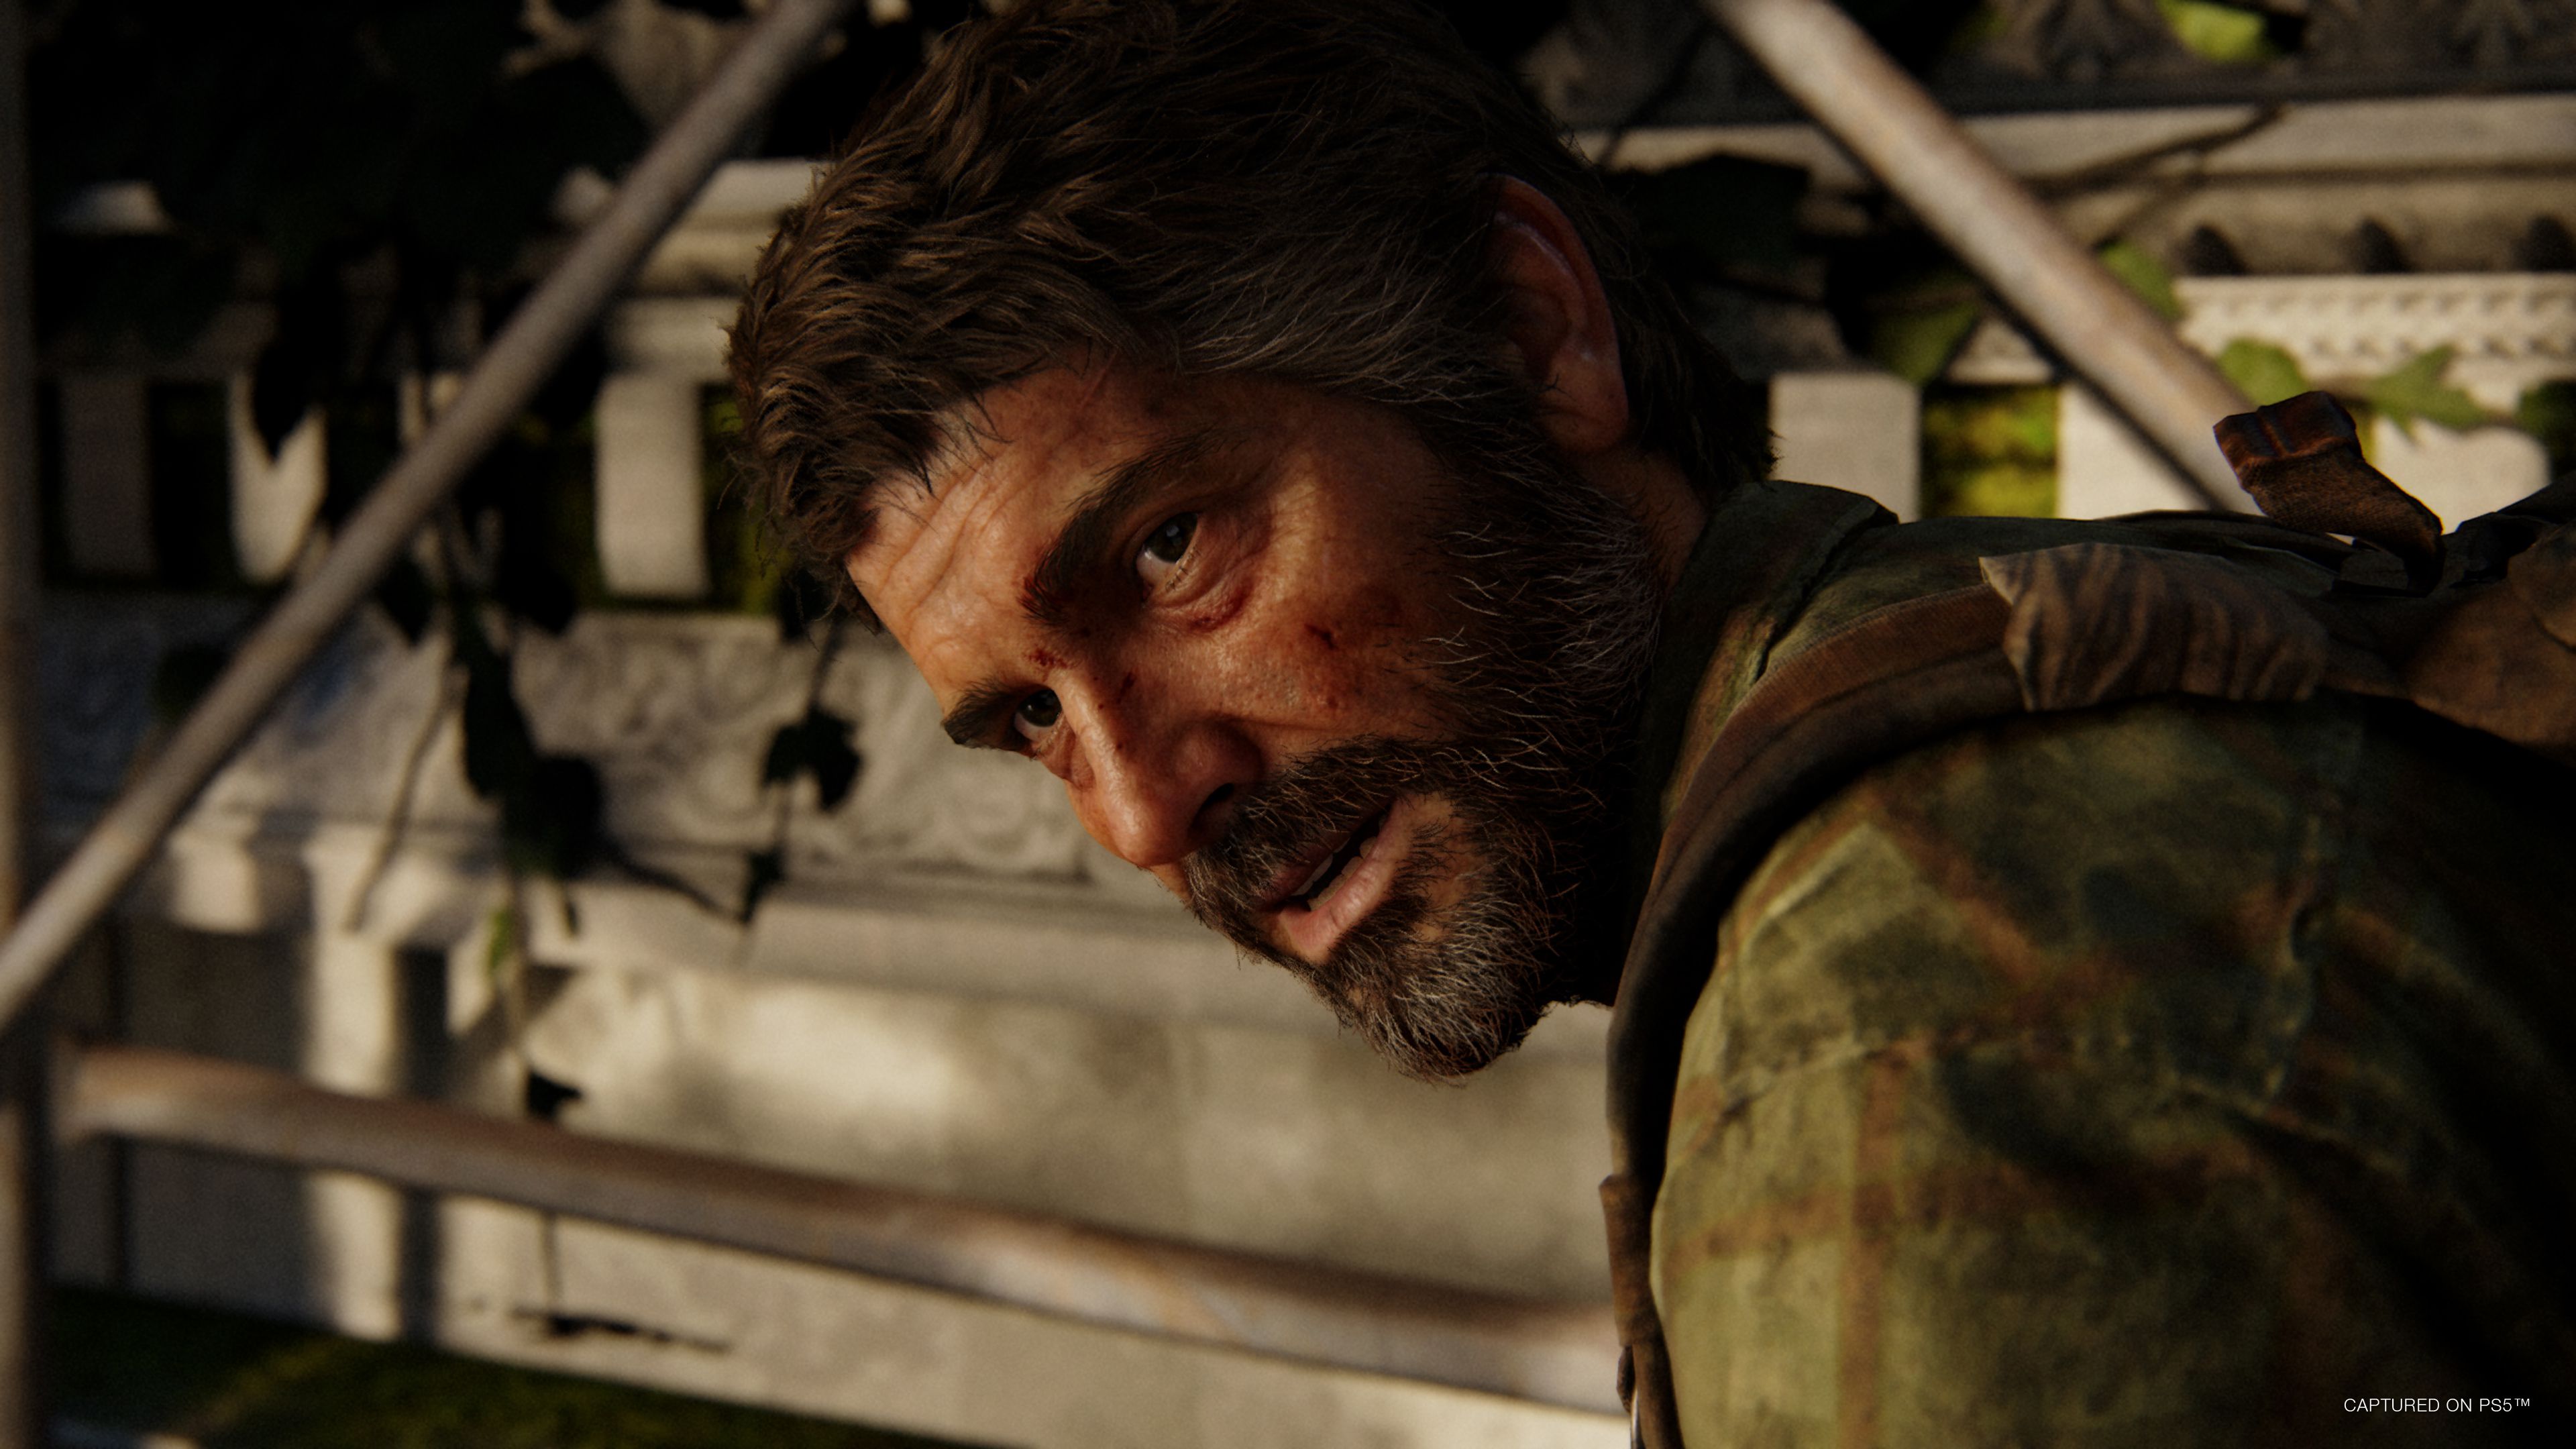 Série de The Last of Us terá conteúdo inédito em relação ao jogo